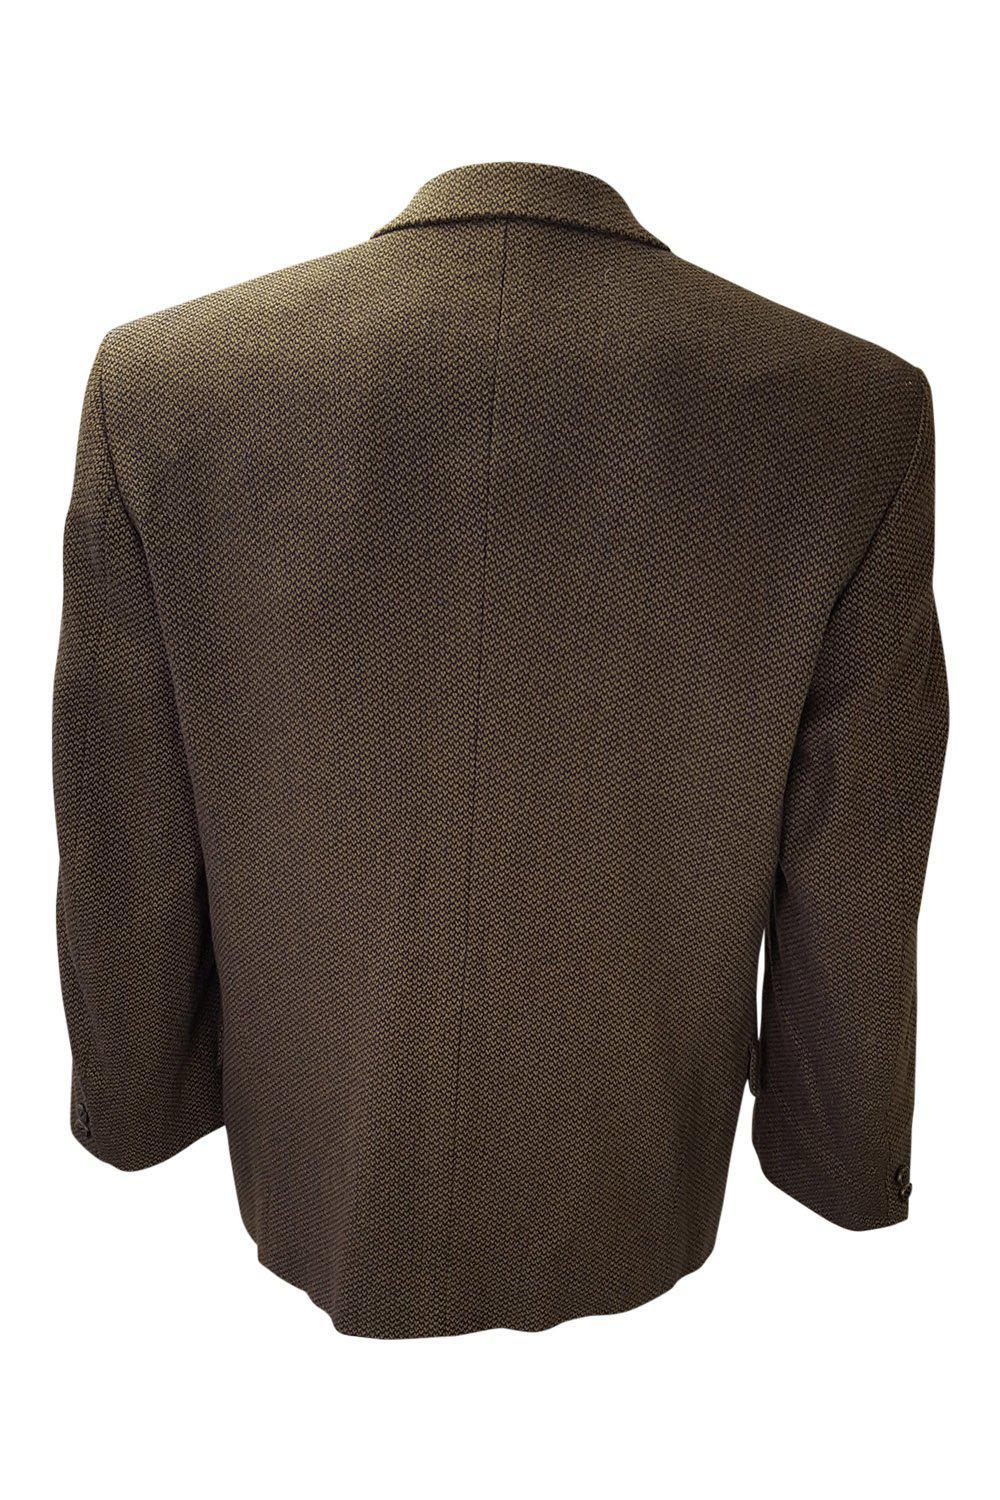 YVES SAINT LAURENT Men's Vintage Brown Wool Blend Single Breast Jacket-Yves Saint Laurent-The Freperie